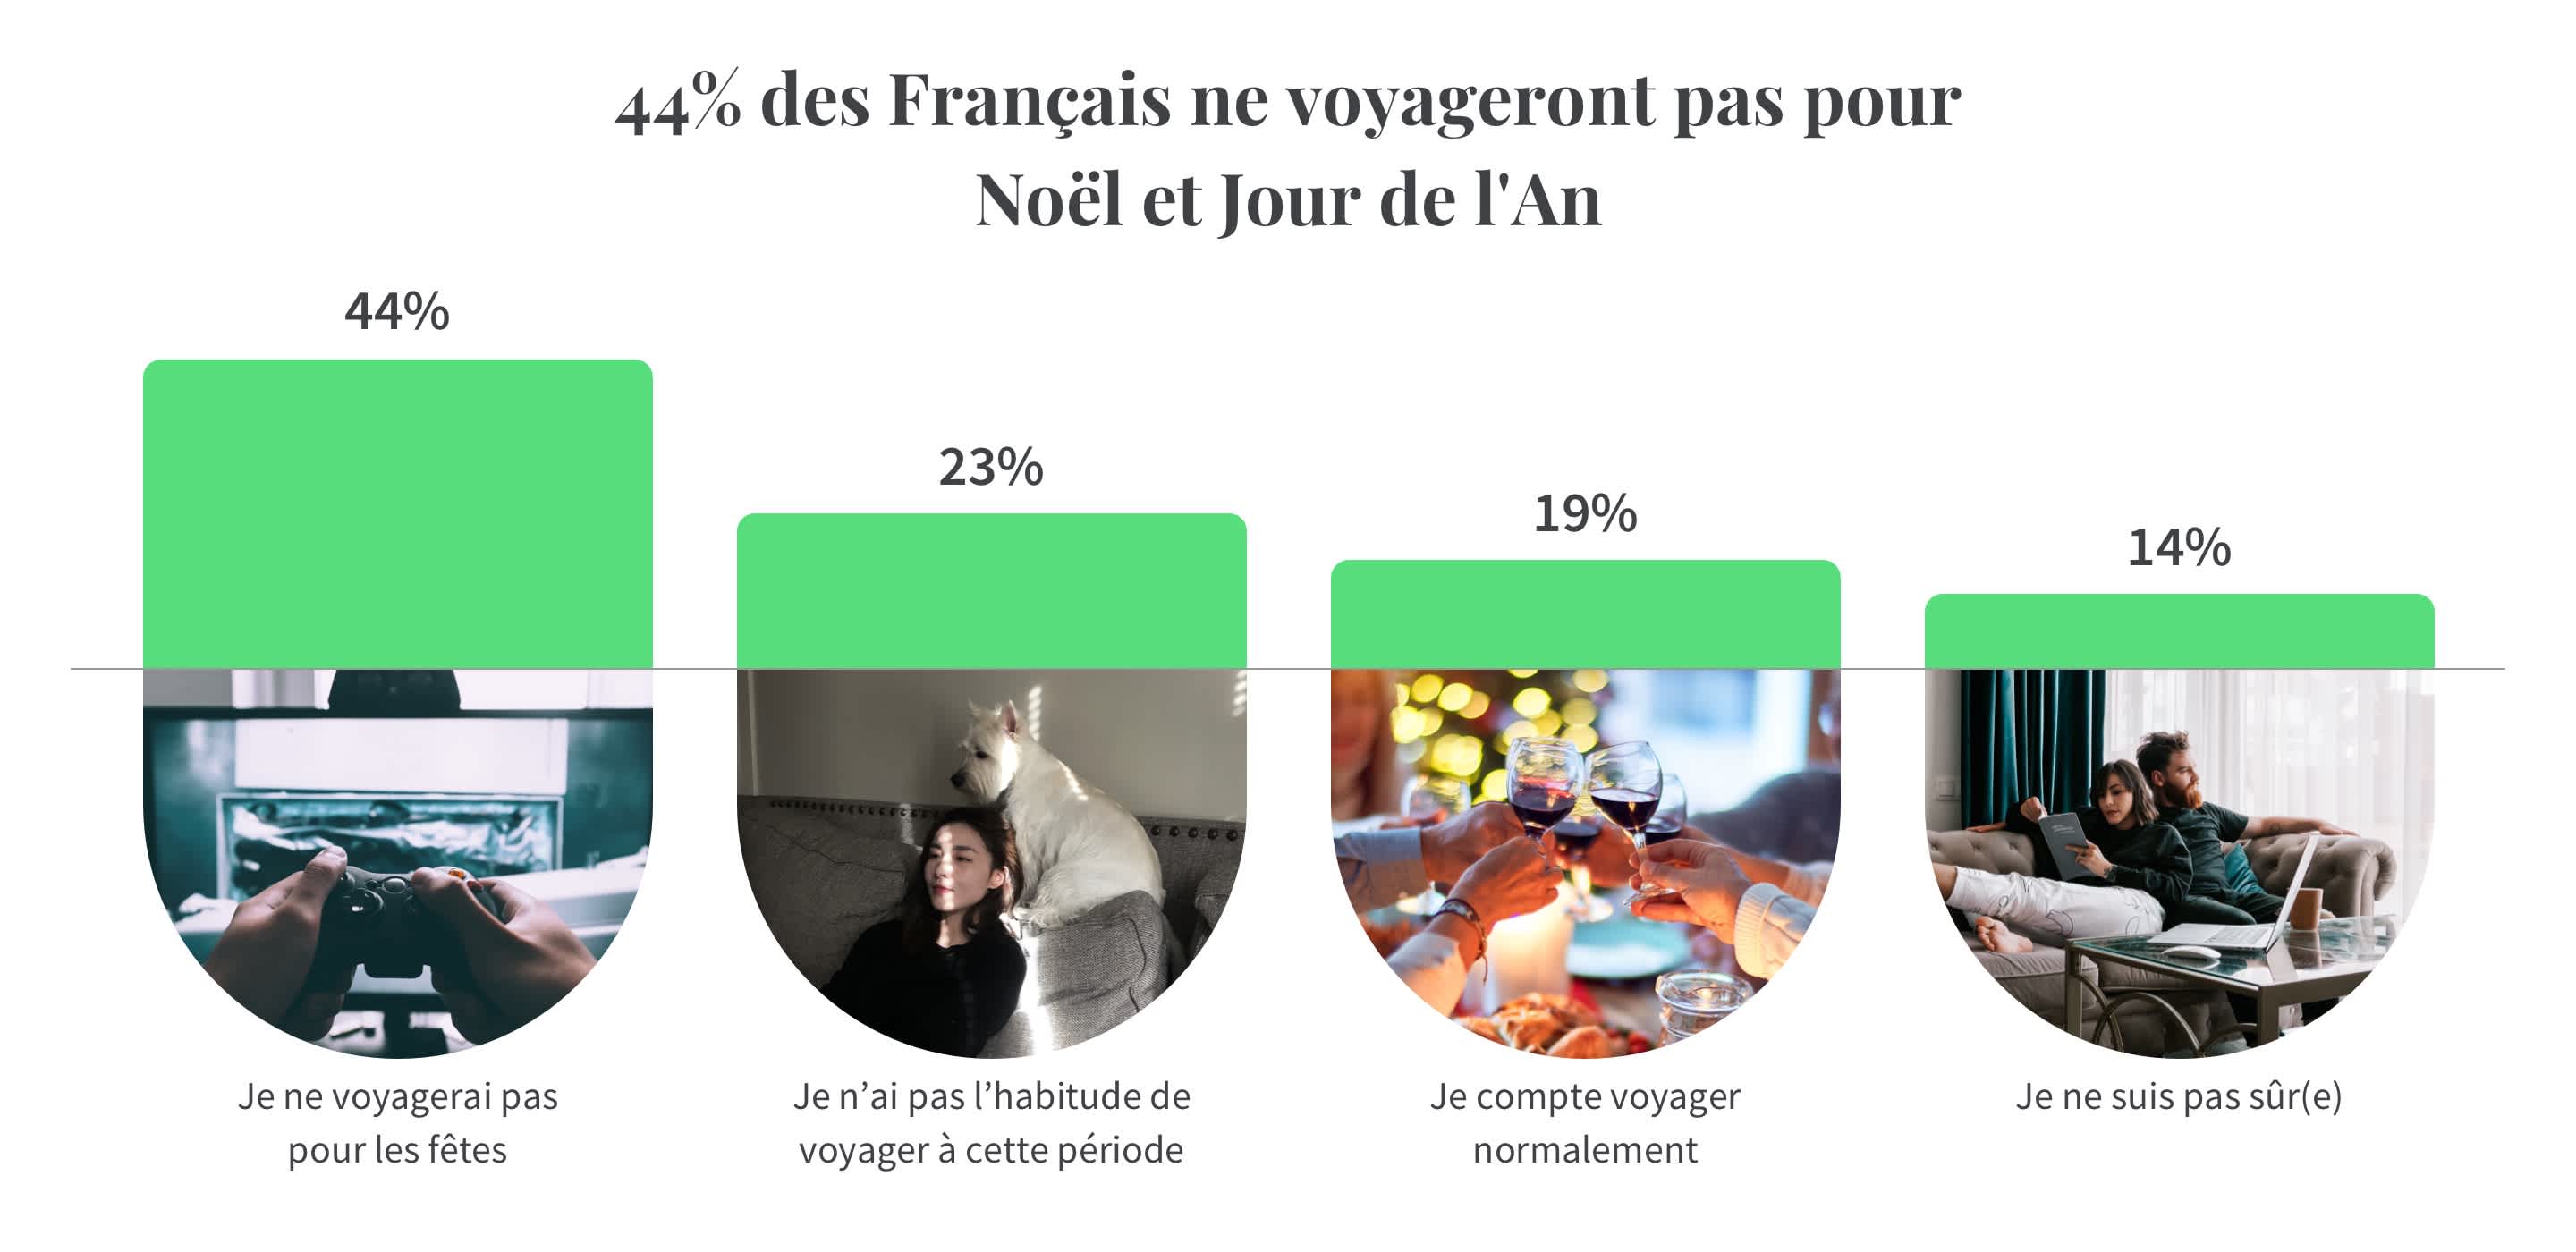 Infographie montrant que 44% des Français ne voyageront pas pour Noël et Jour de l'An 2020 dû au Covid-19. Source : Sondage Tourlane sur les Tendances de voyages en 2021.